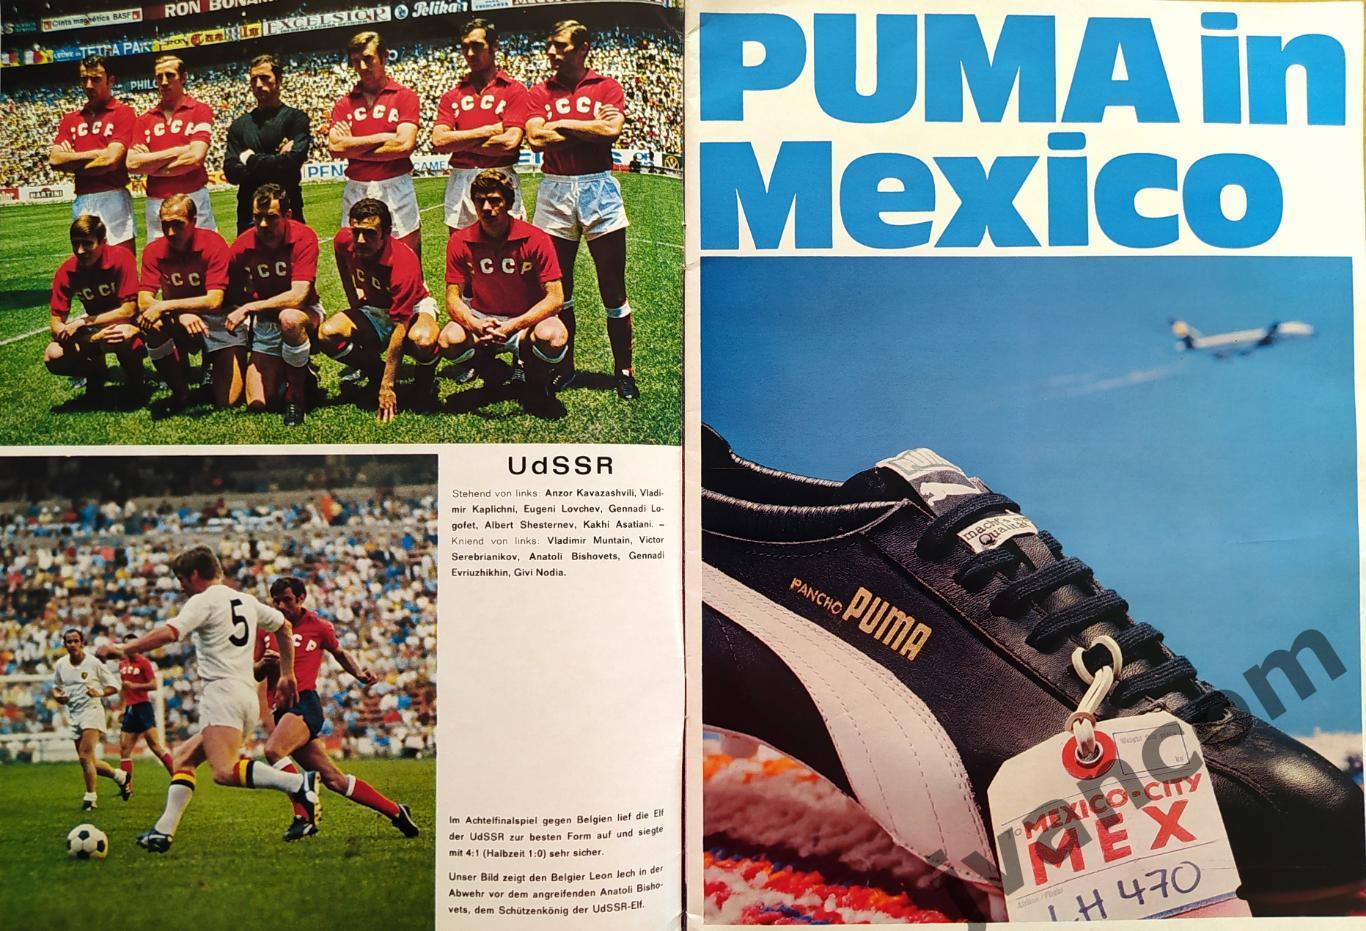 FUSSBALL-1970 Weltmeisterschaft / Чемпионат Мира по футболу в Мексике 1970 года. 3